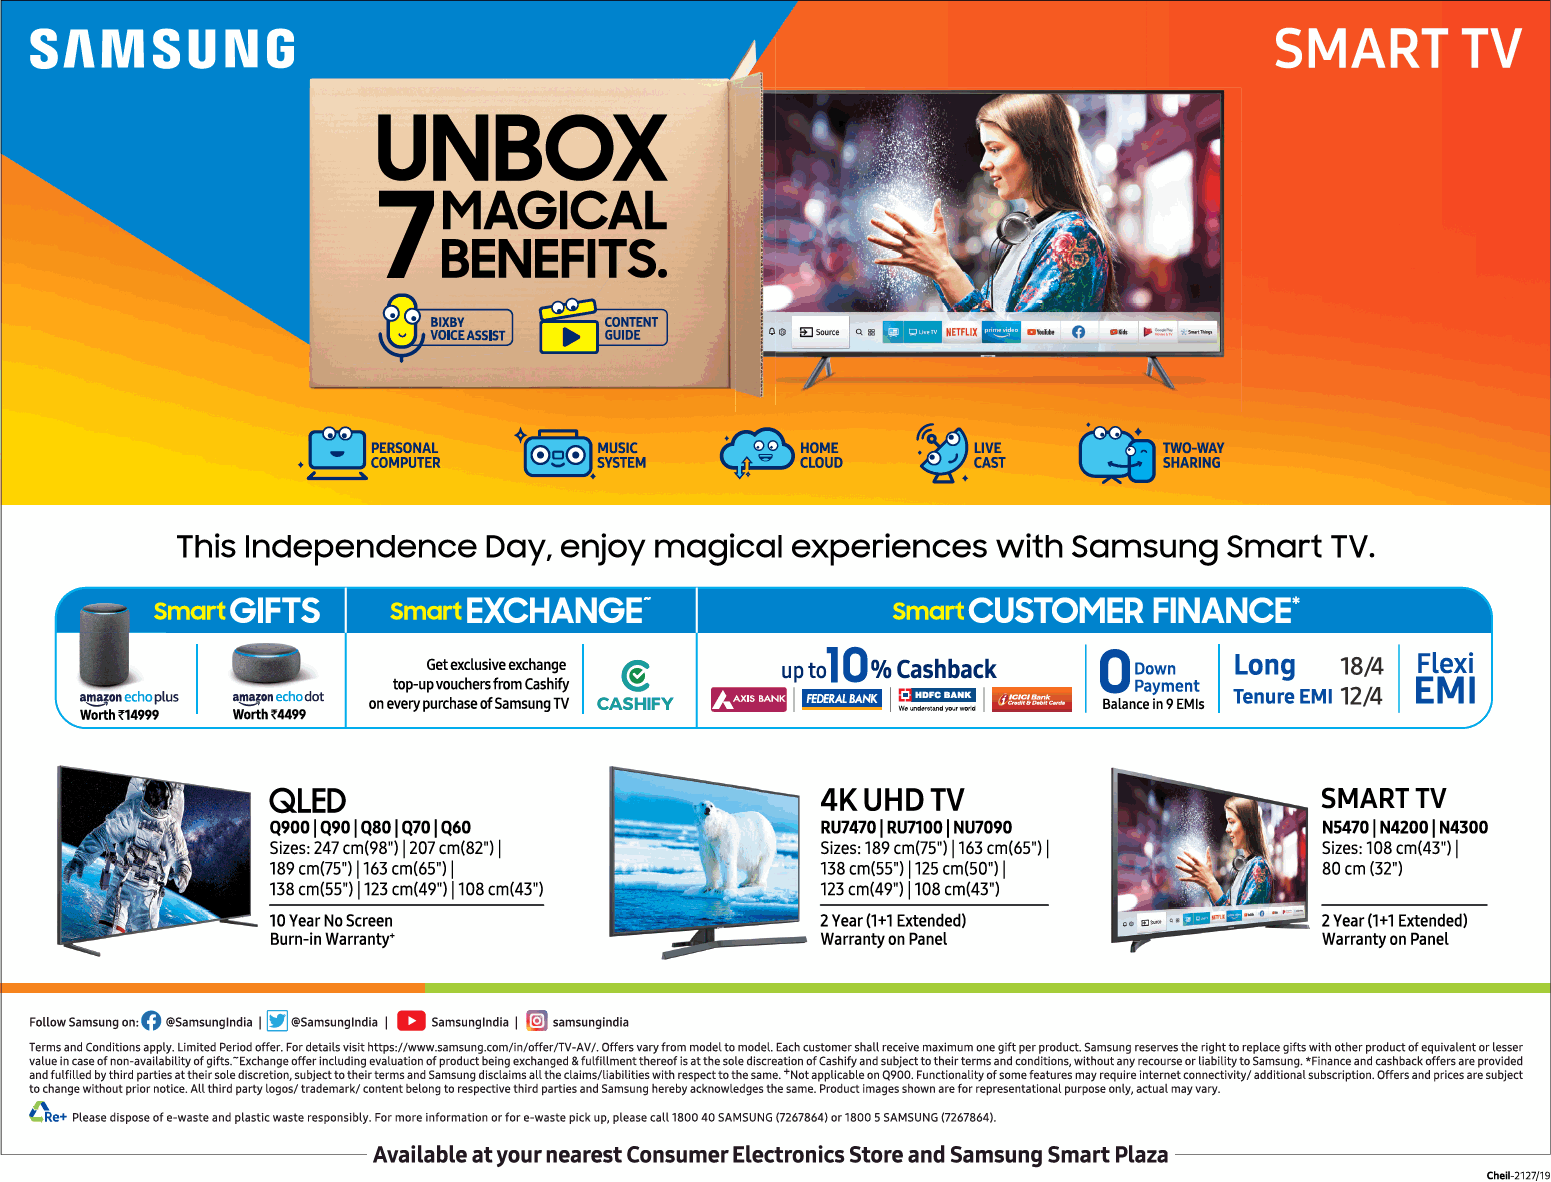 samsung-smart-tv-unbox-7-magical-benefits-ad-delhi-times-15-08-2019.png